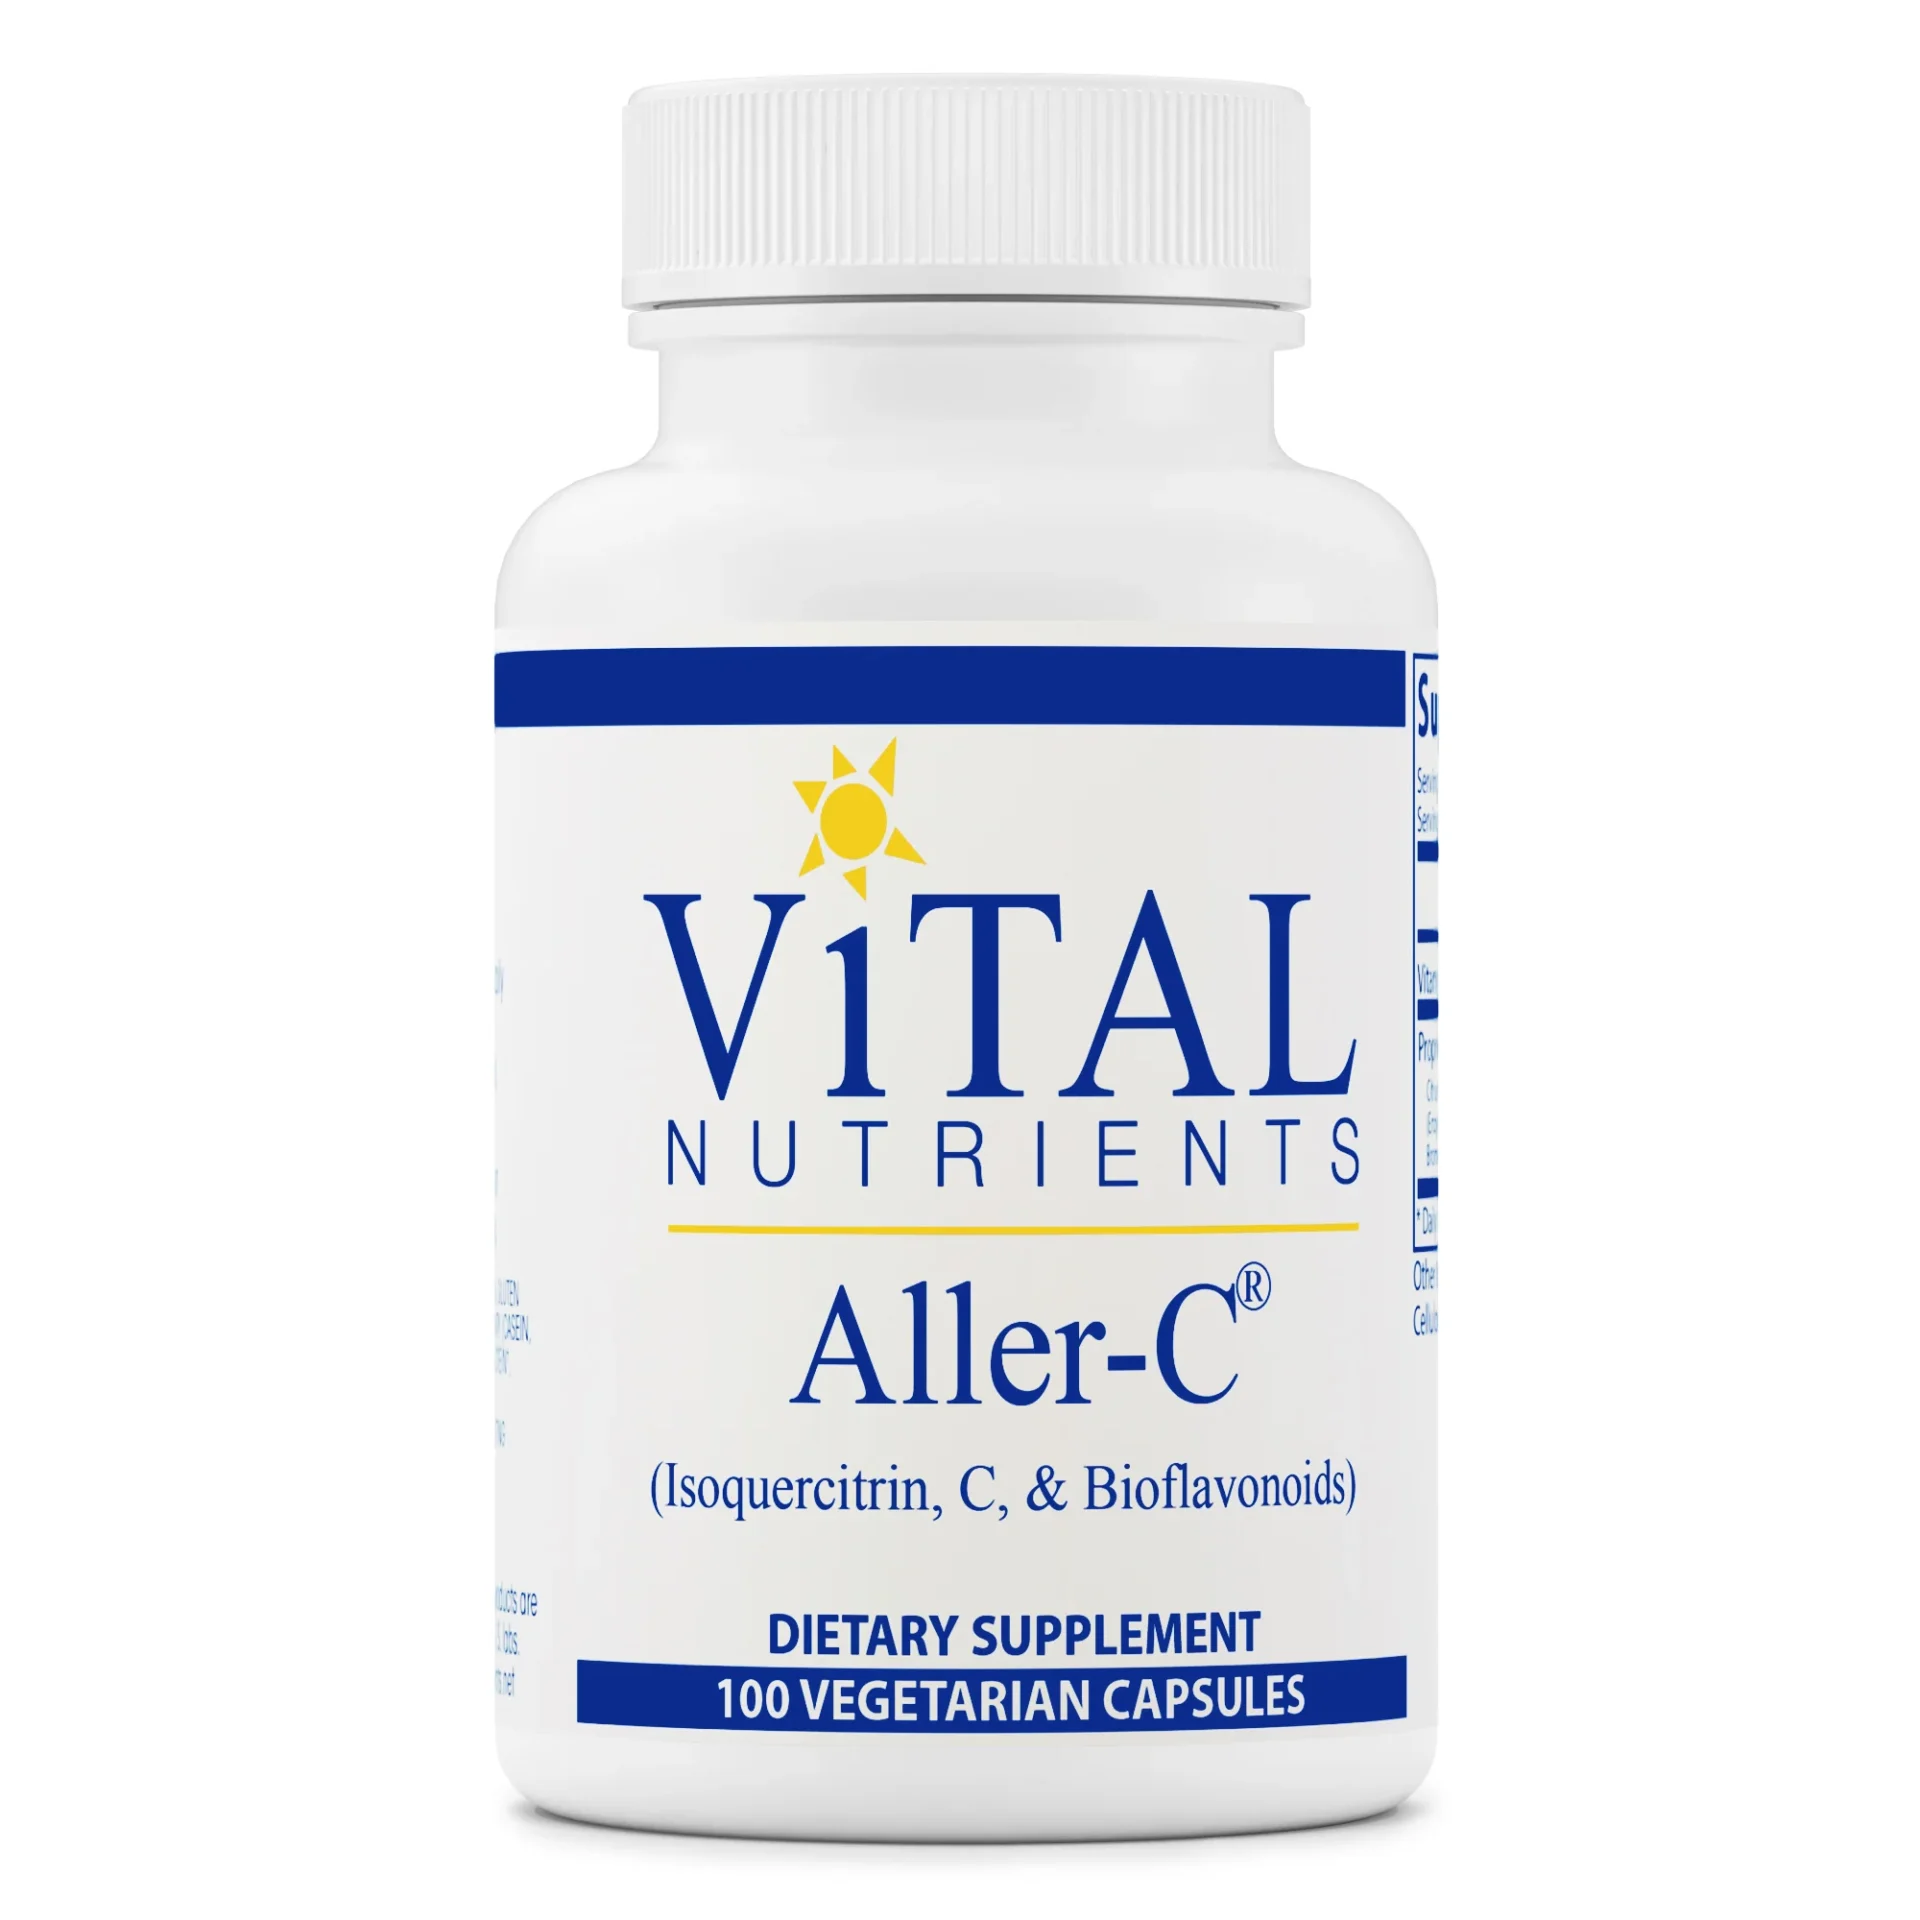 Vital Nutrients Aller C bottle on a white bg